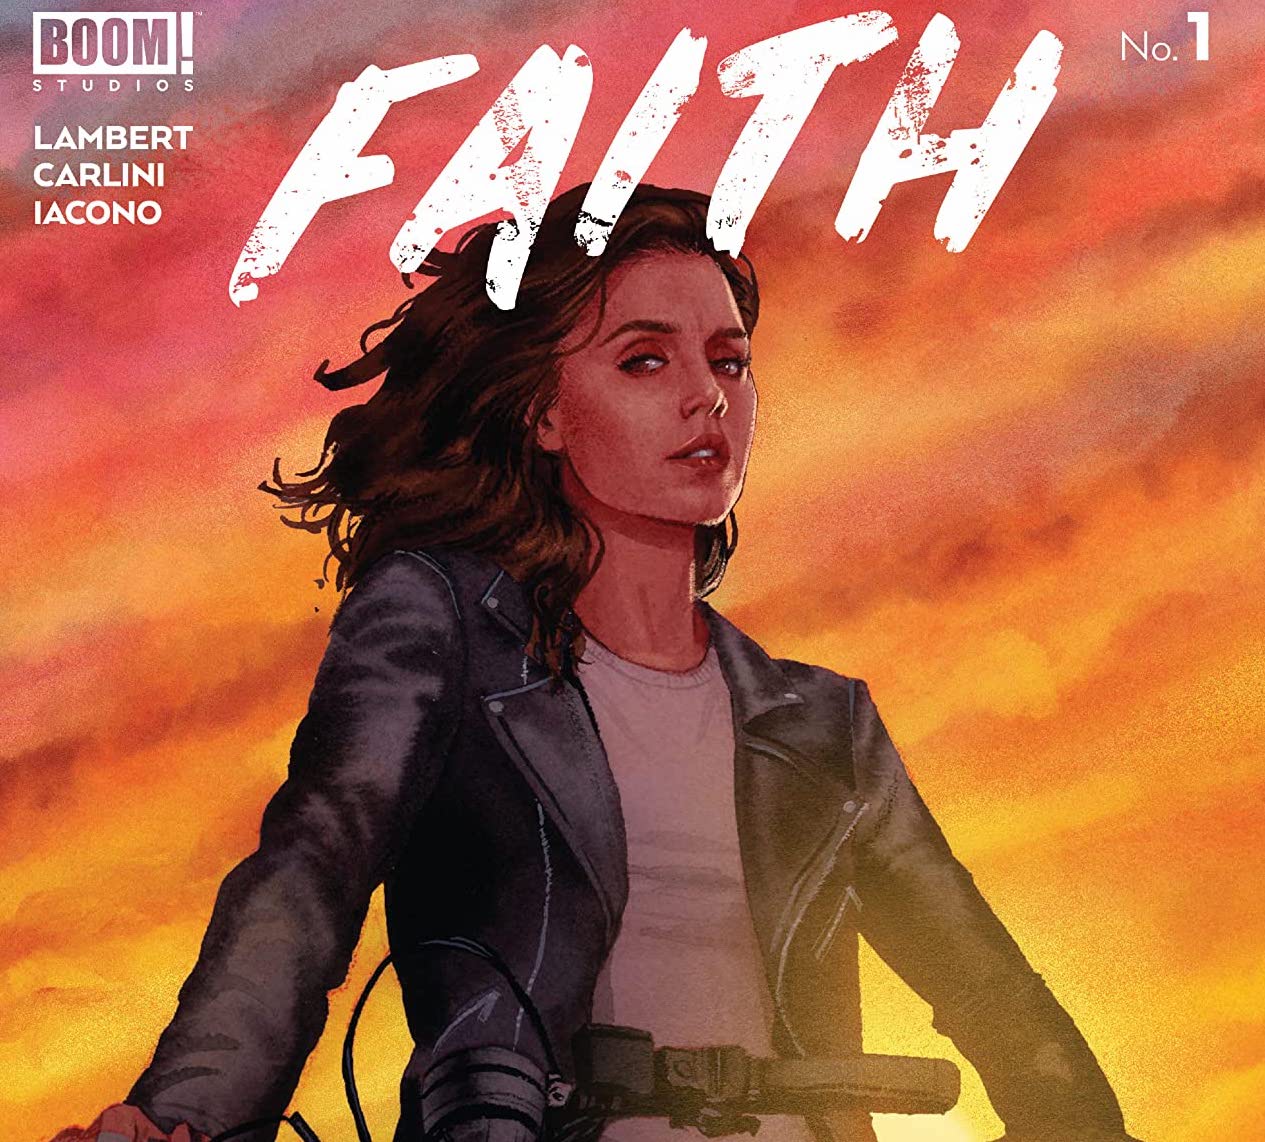 Buffy the Vampire Slayer: Faith #1